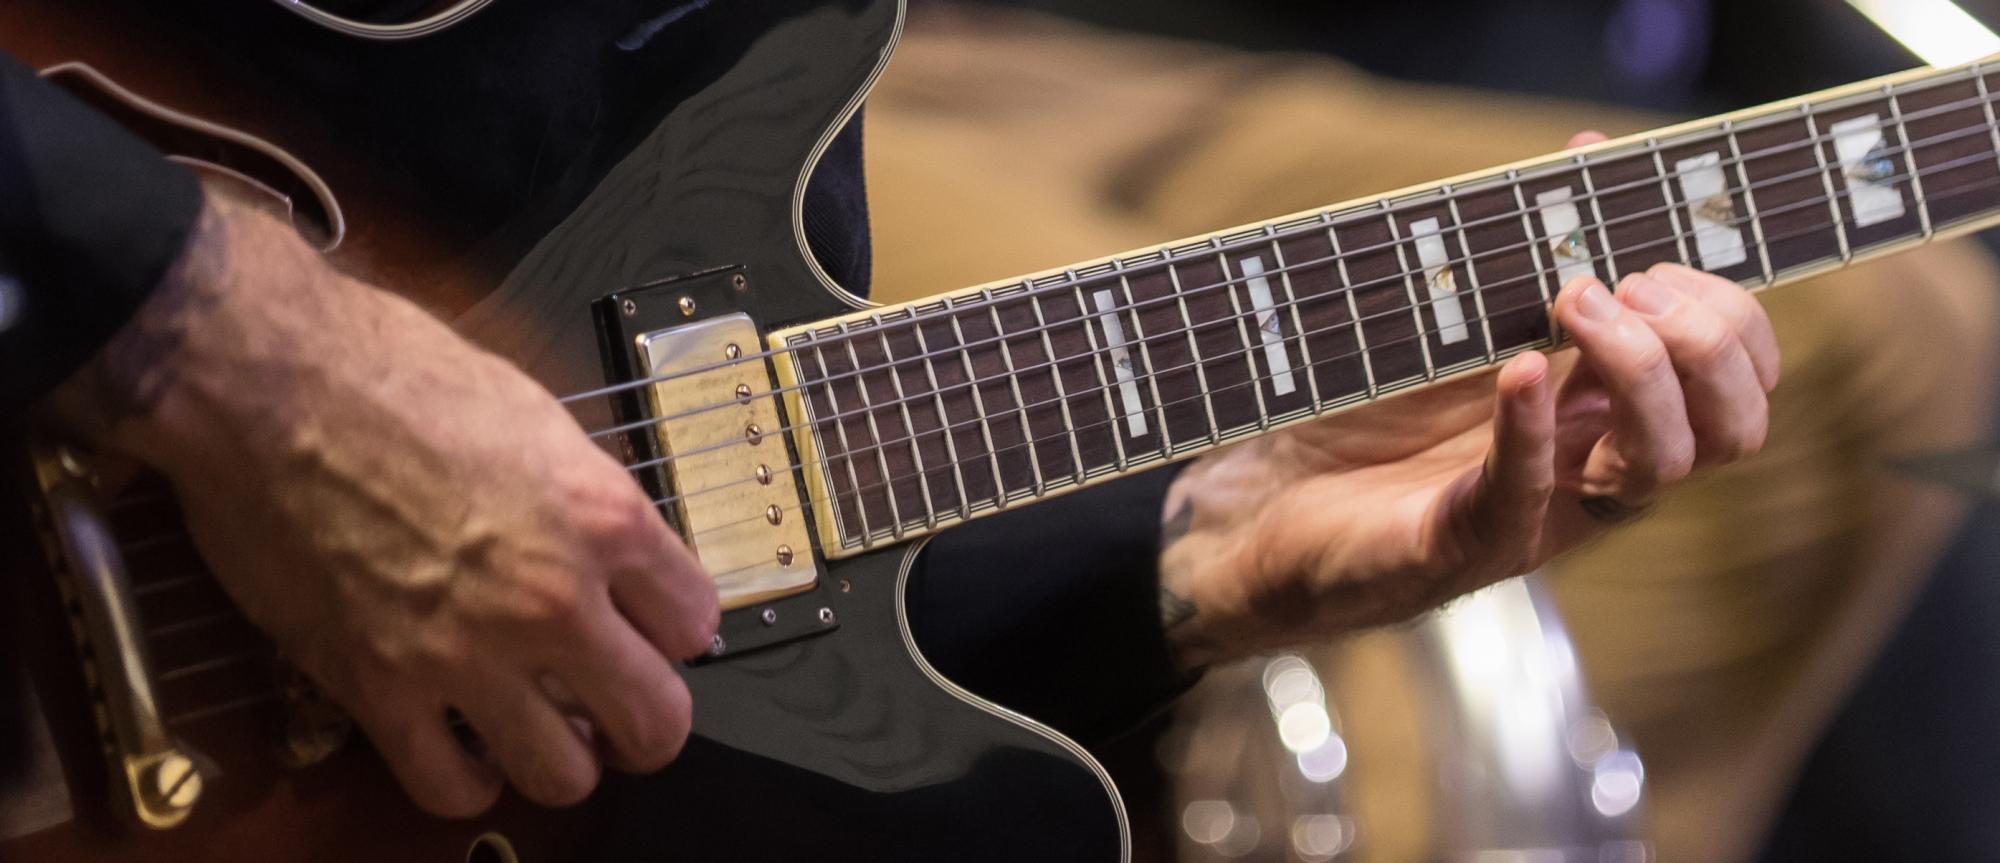 Closeup of guitar being played